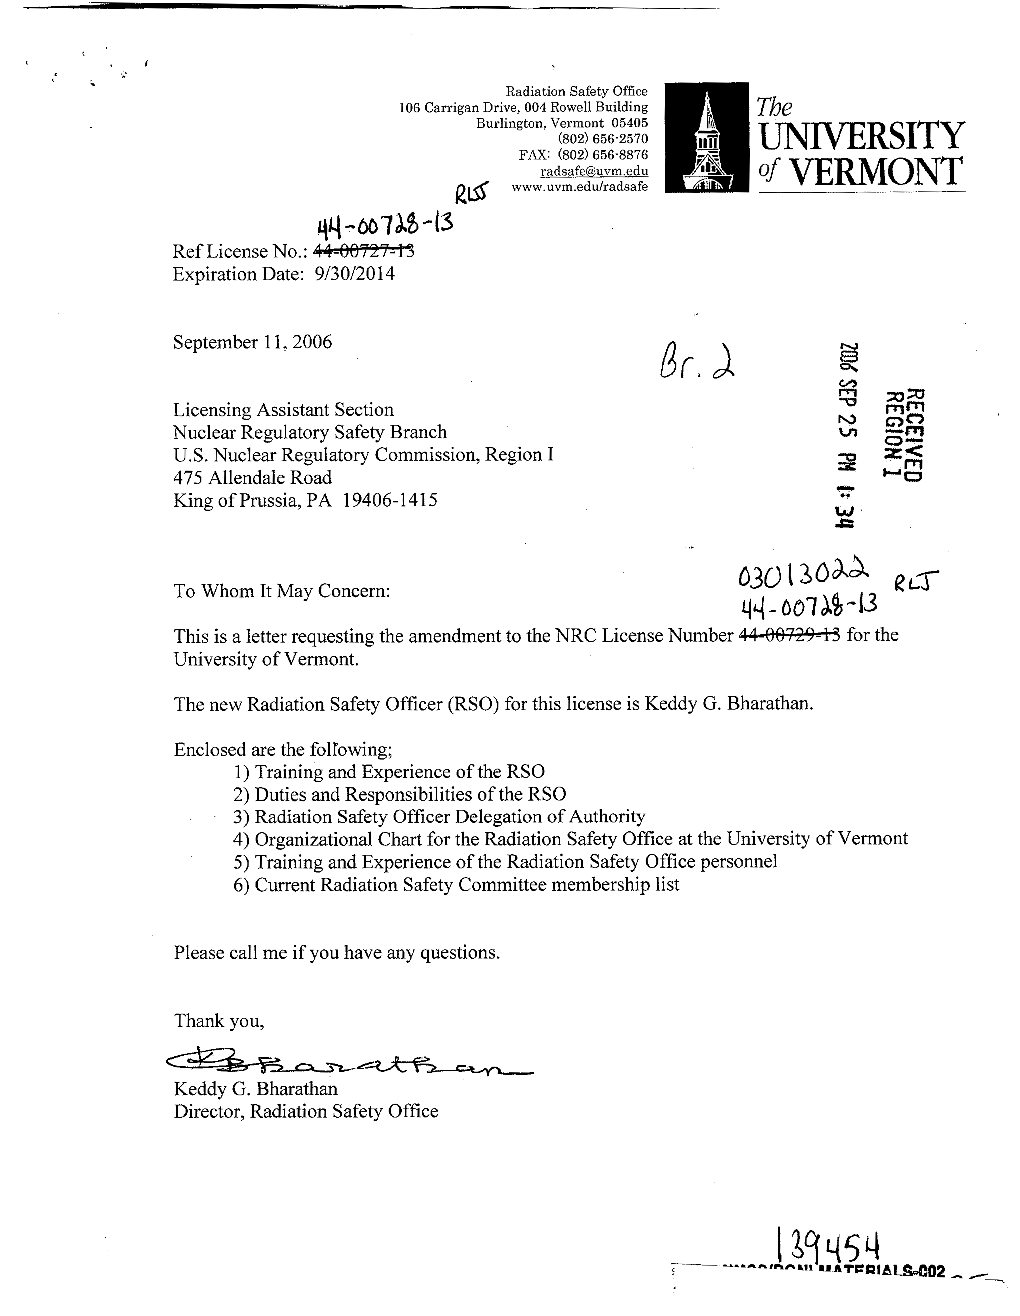 University of Vermont, Amendment Request Ltr. Dtd 09/11/2006